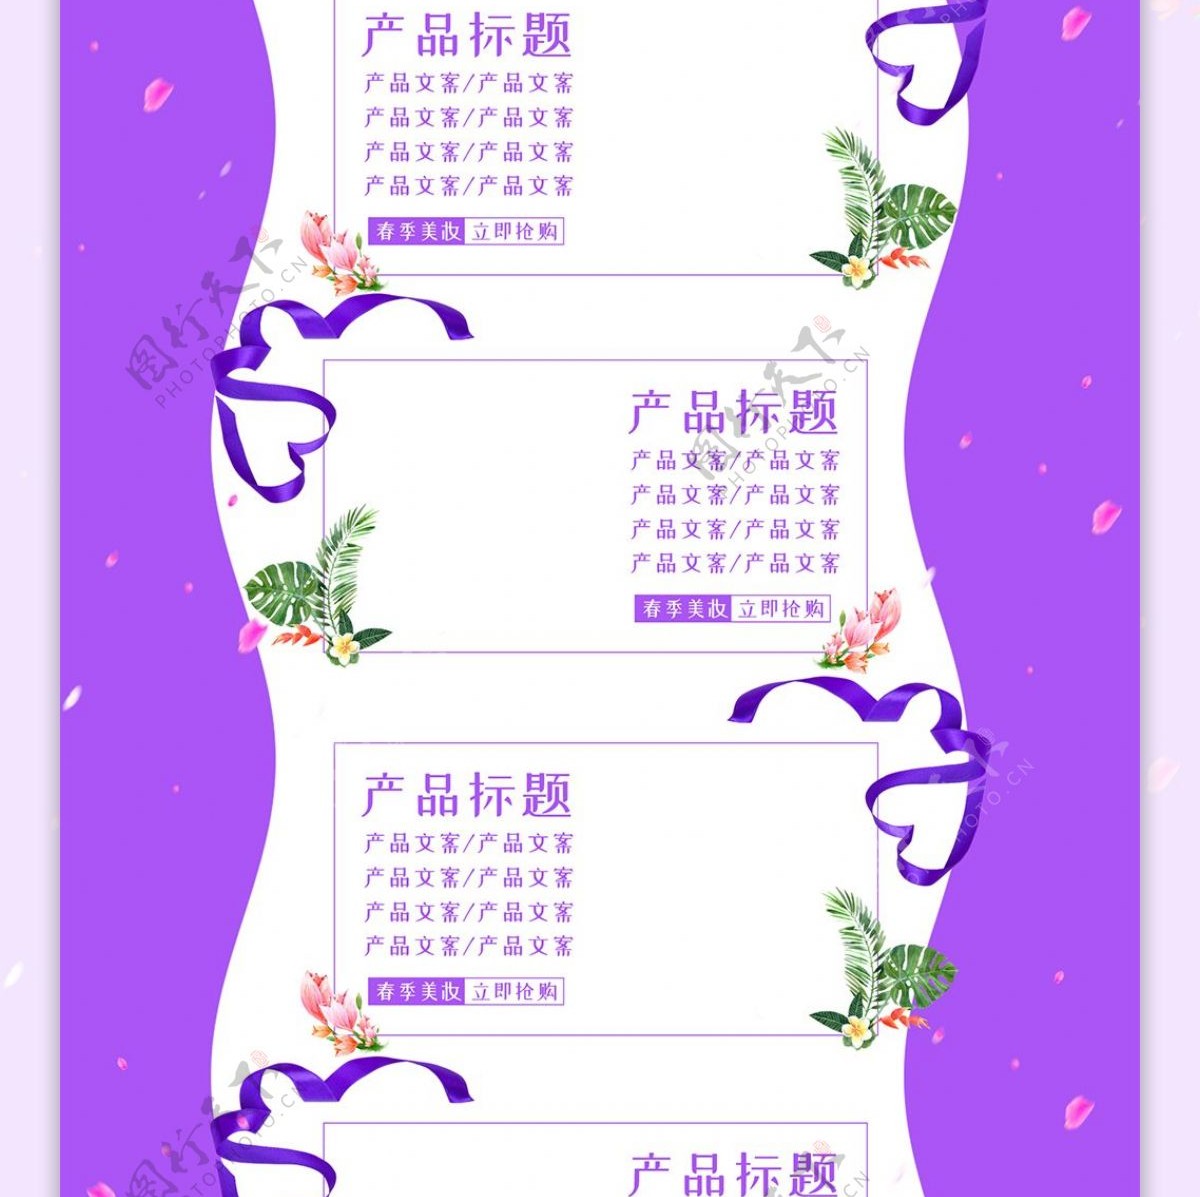 唯美清新紫色化妆品美妆春光季植物优惠首页